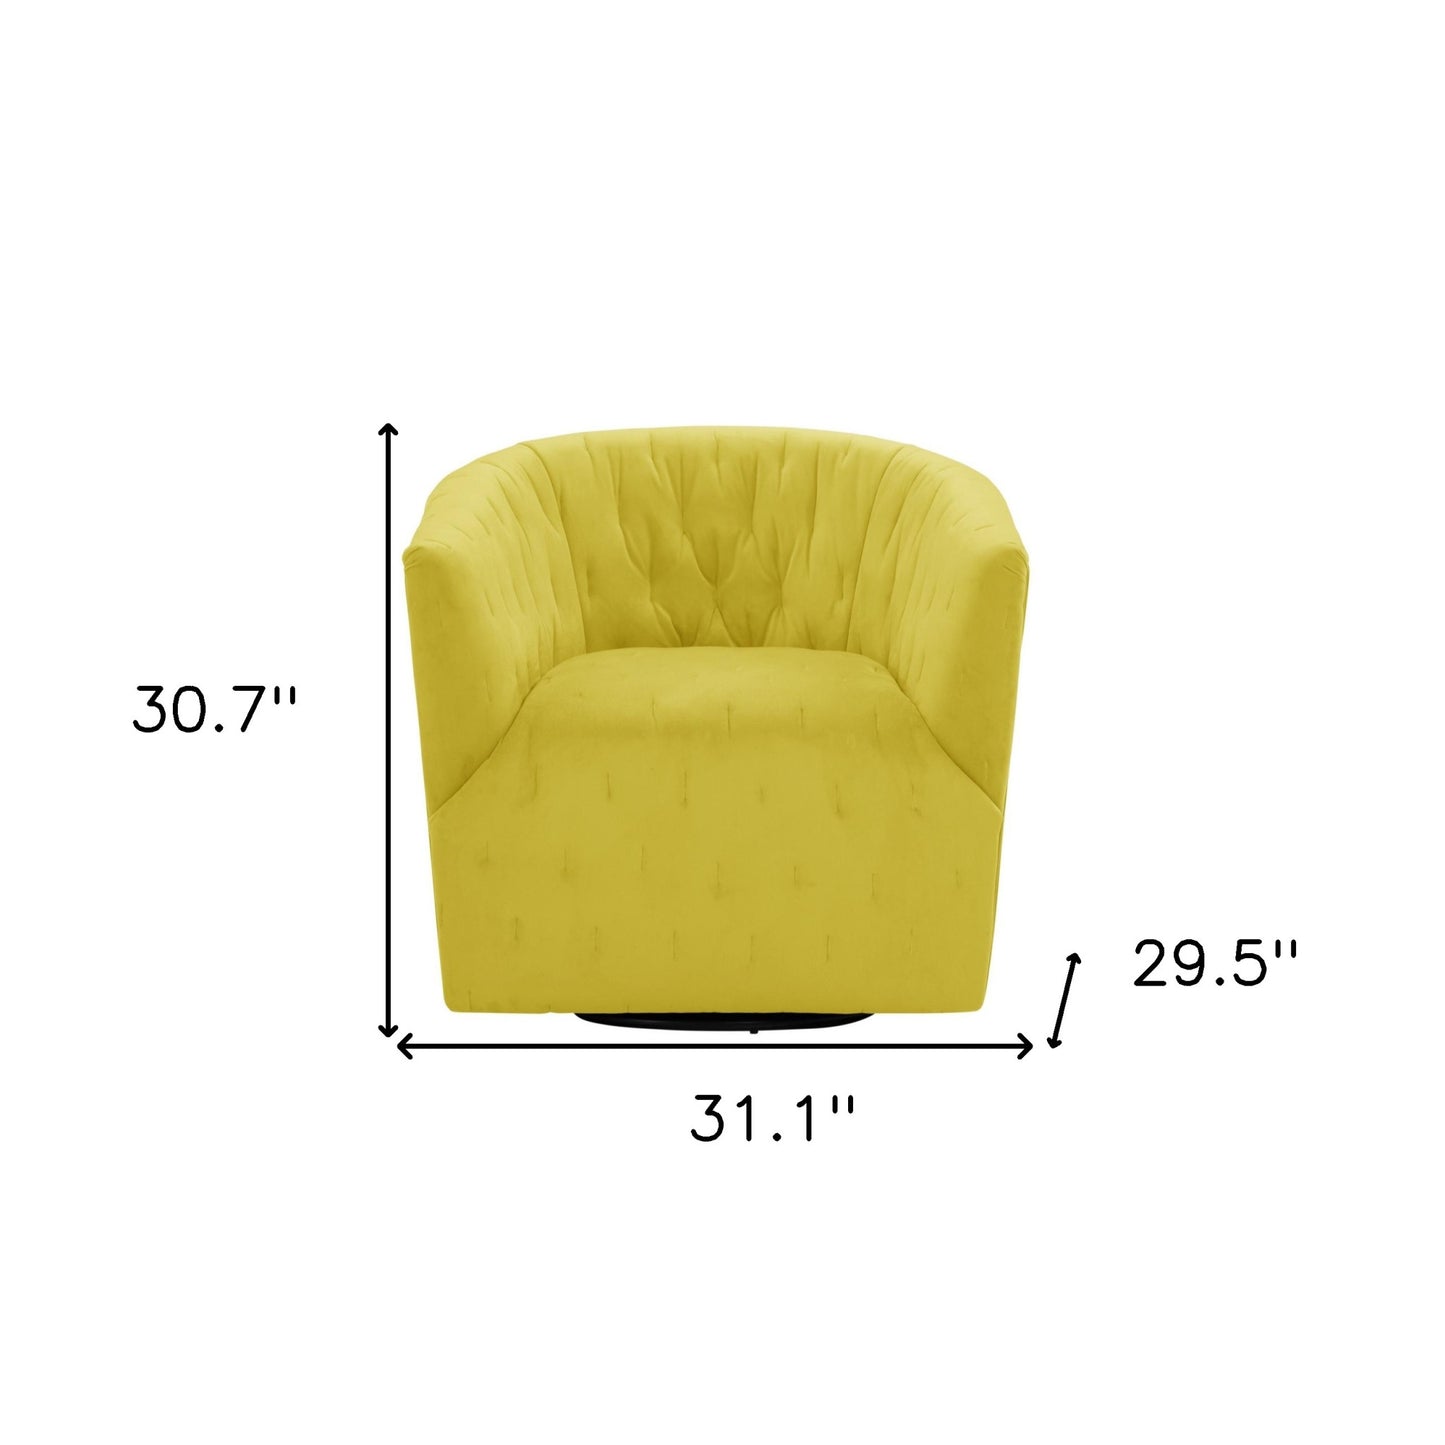 31" Yellow And Black Velvet Tufted Swivel Barrel Chair